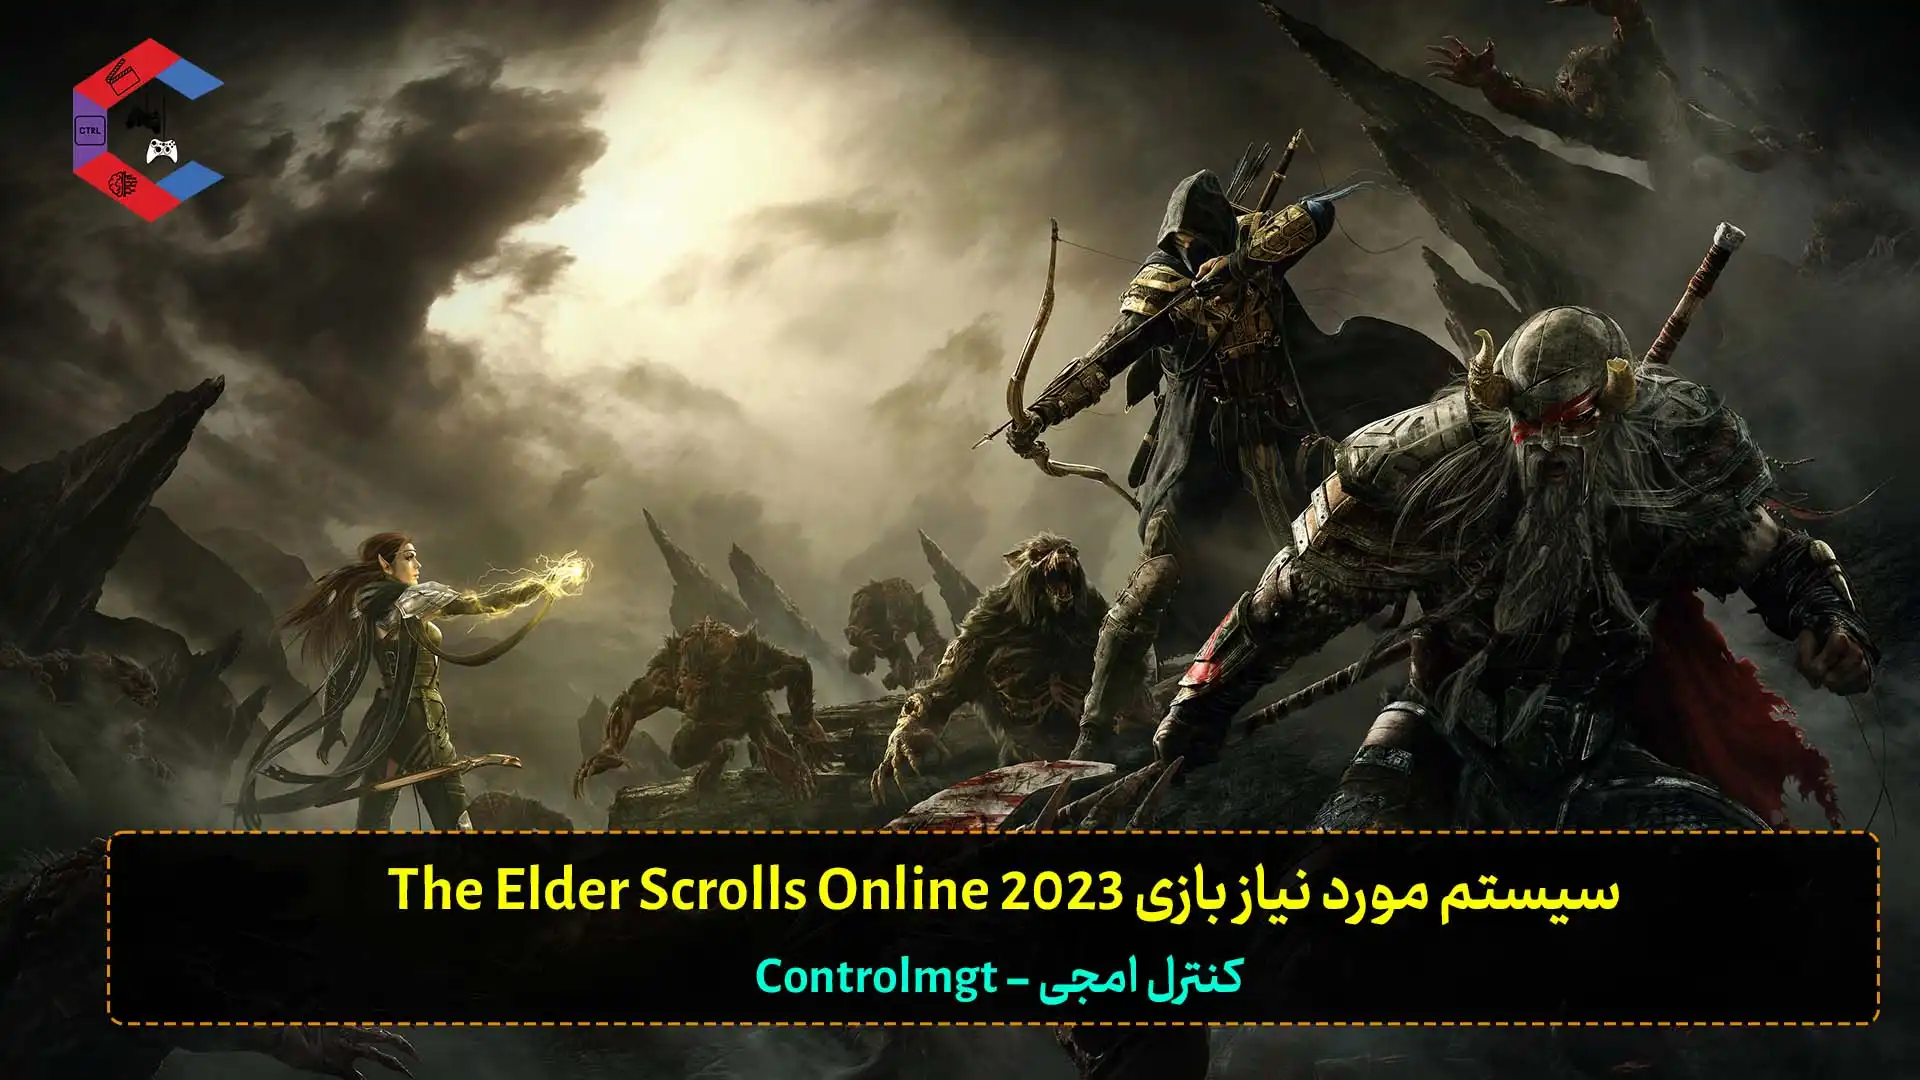 سیستم مورد نیاز بازی The Elder Scrolls Online 2023 + سیستم پیشنهادی